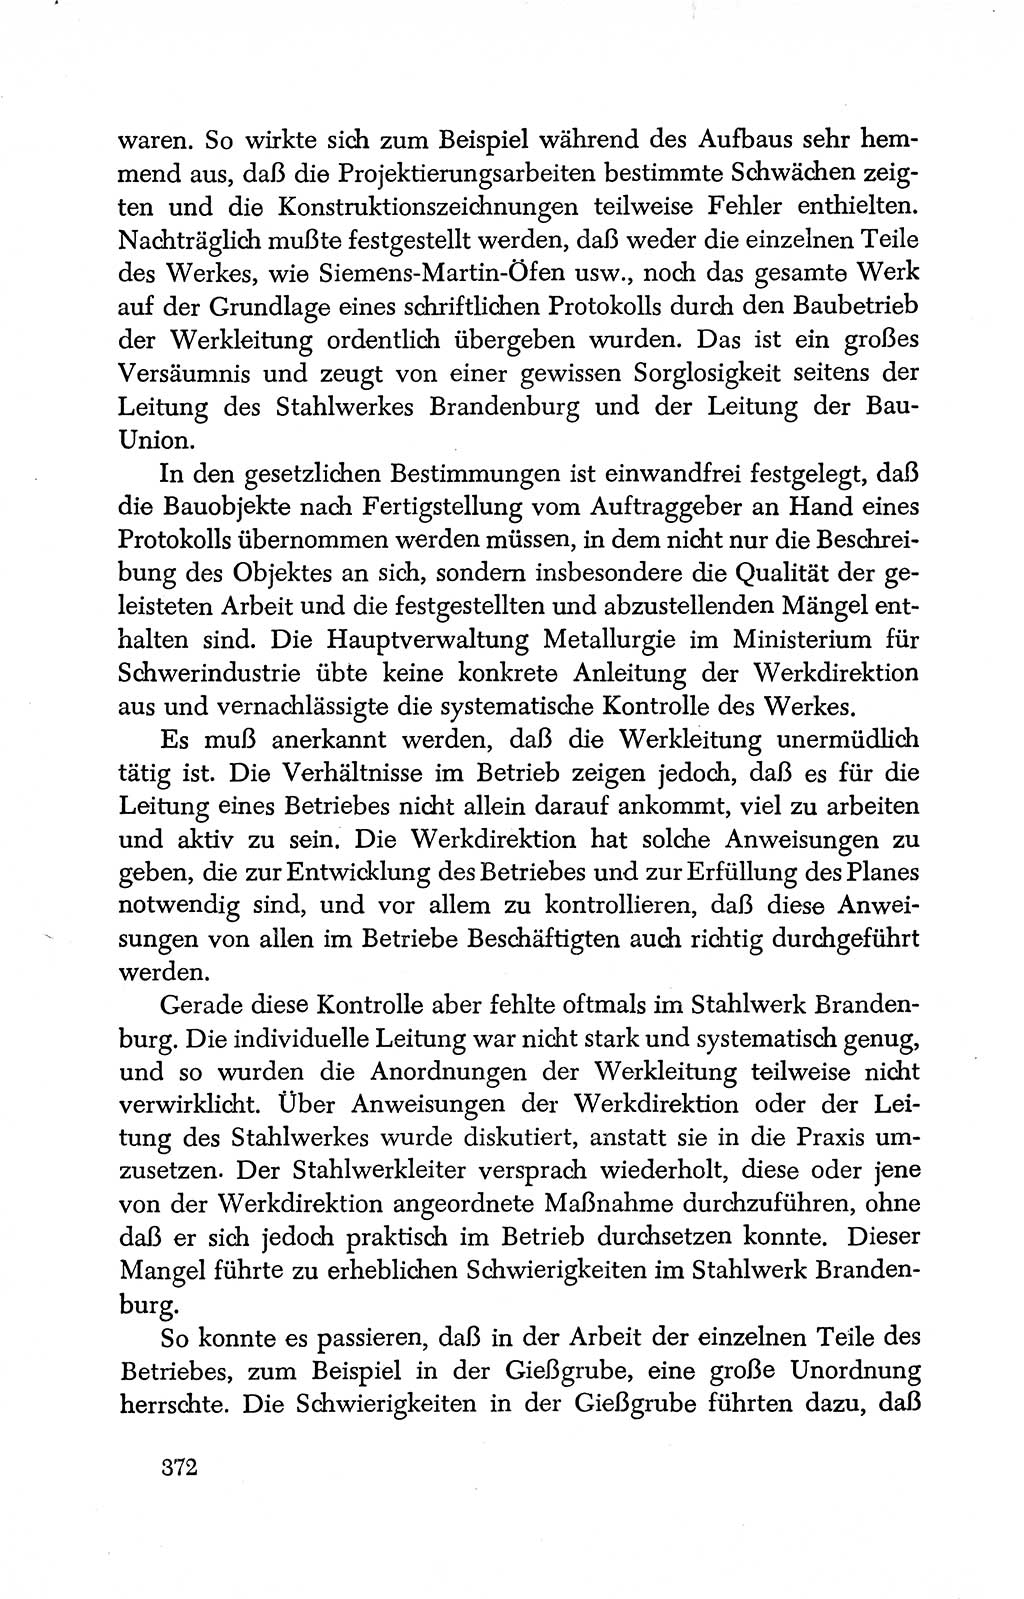 Dokumente der Sozialistischen Einheitspartei Deutschlands (SED) [Deutsche Demokratische Republik (DDR)] 1950-1952, Seite 372 (Dok. SED DDR 1950-1952, S. 372)